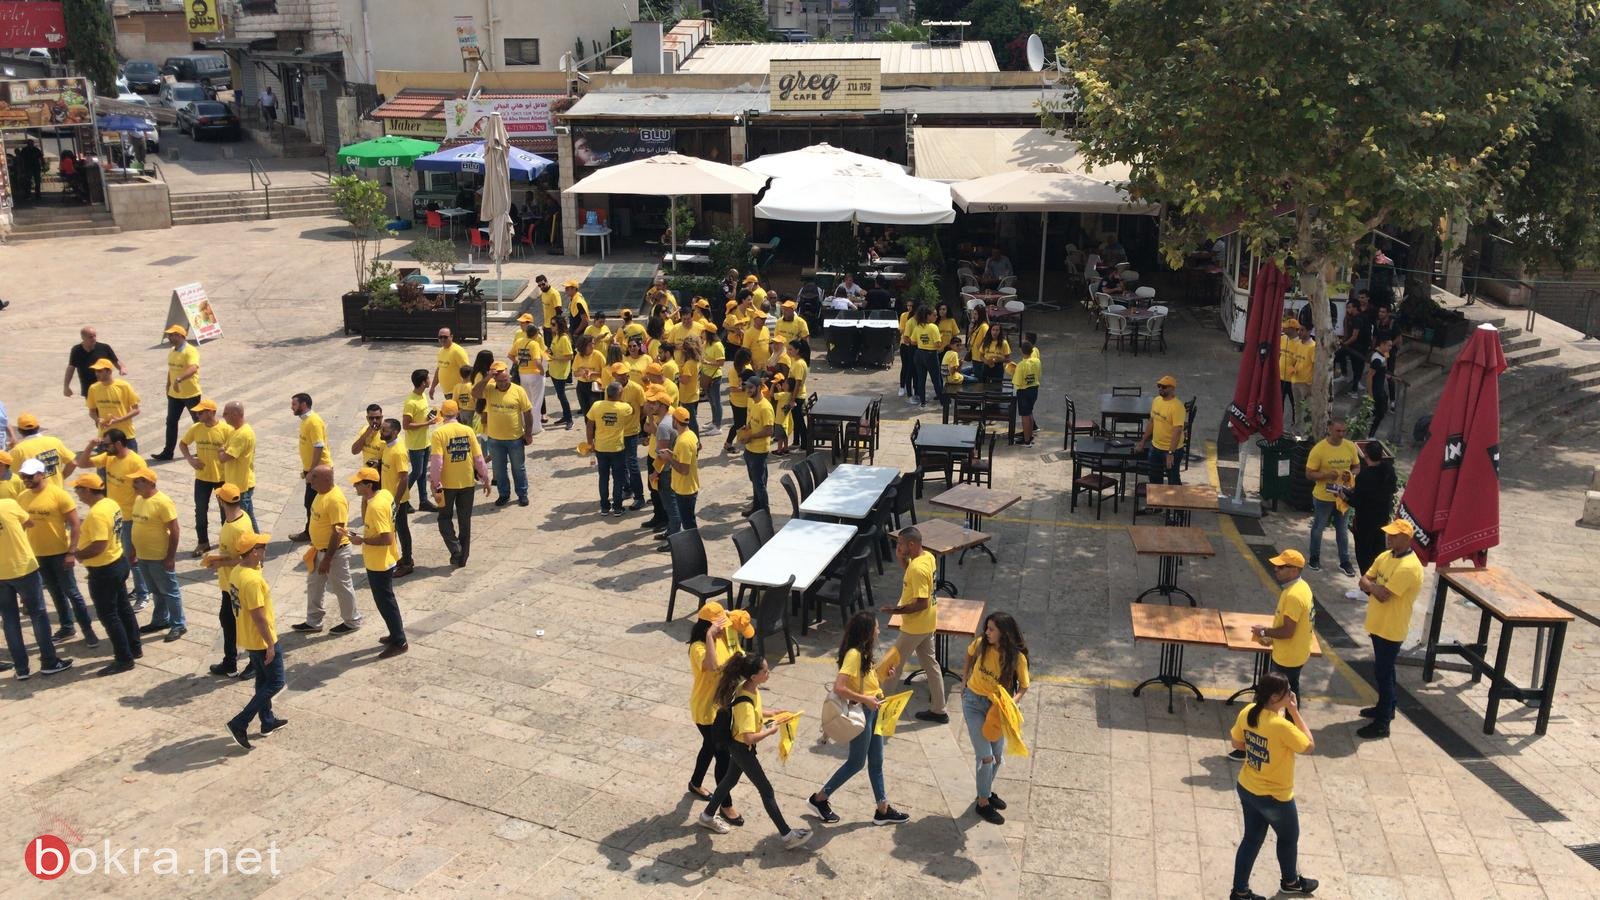 وليد عفيفي وداعموه يوزعون المناشير الانتخابية في شوارع الناصرة-0